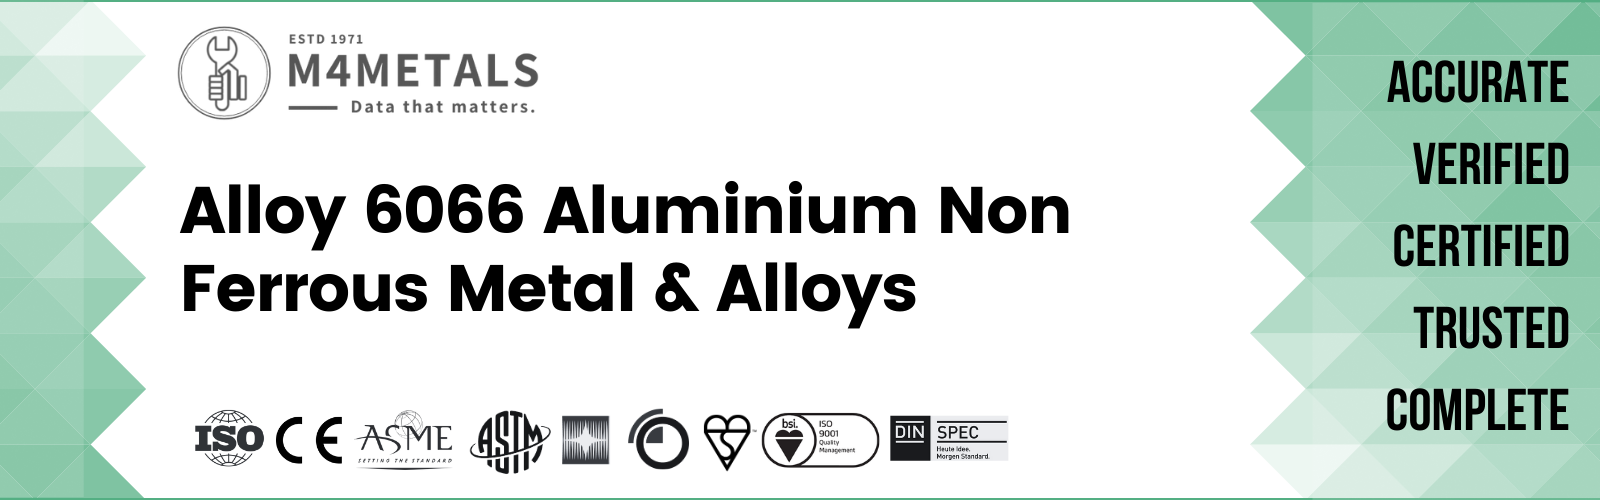 Aluminium Alloy 6066